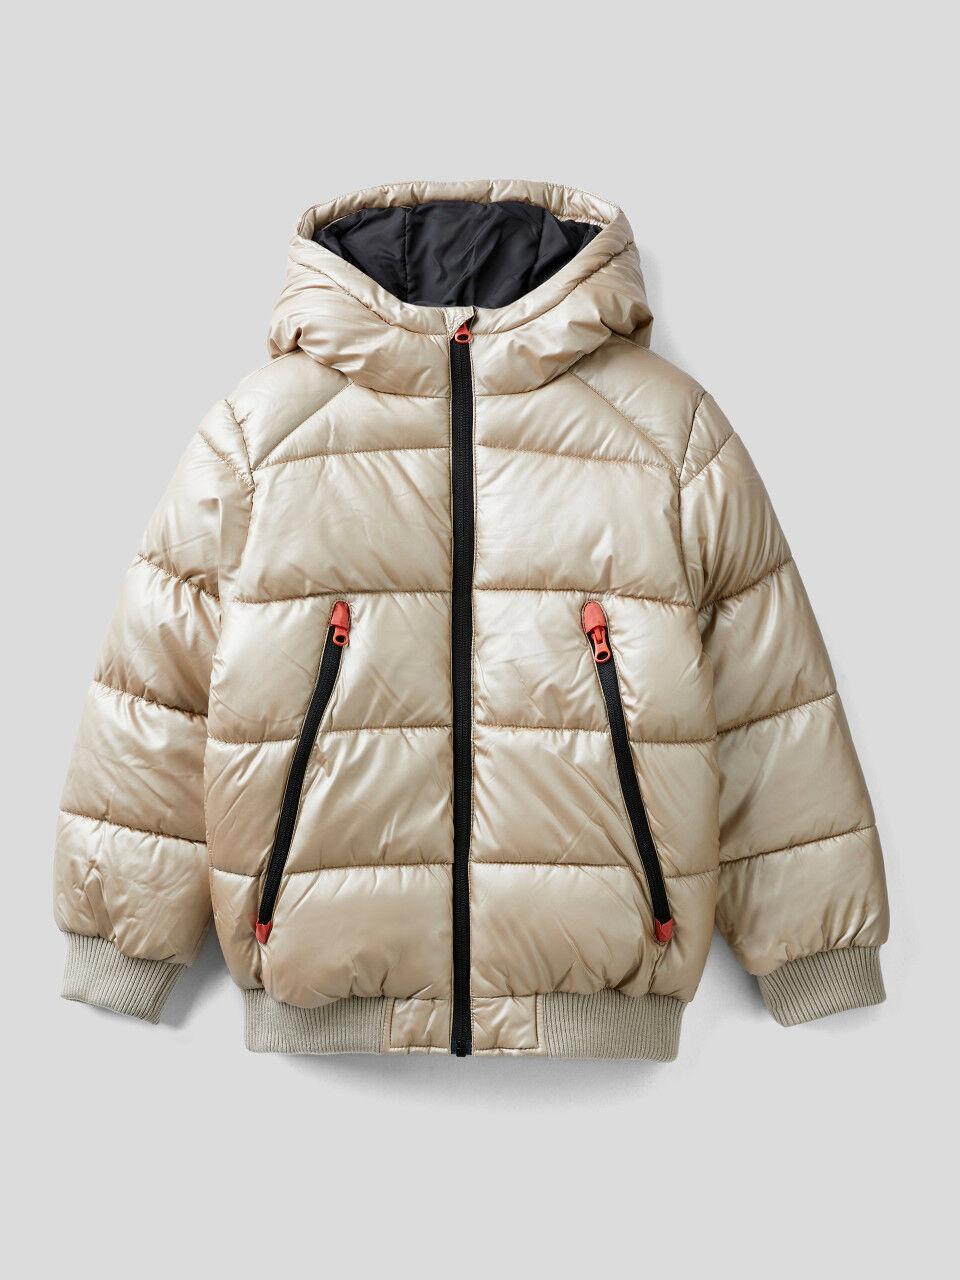 Shiny jacket with maxi zip